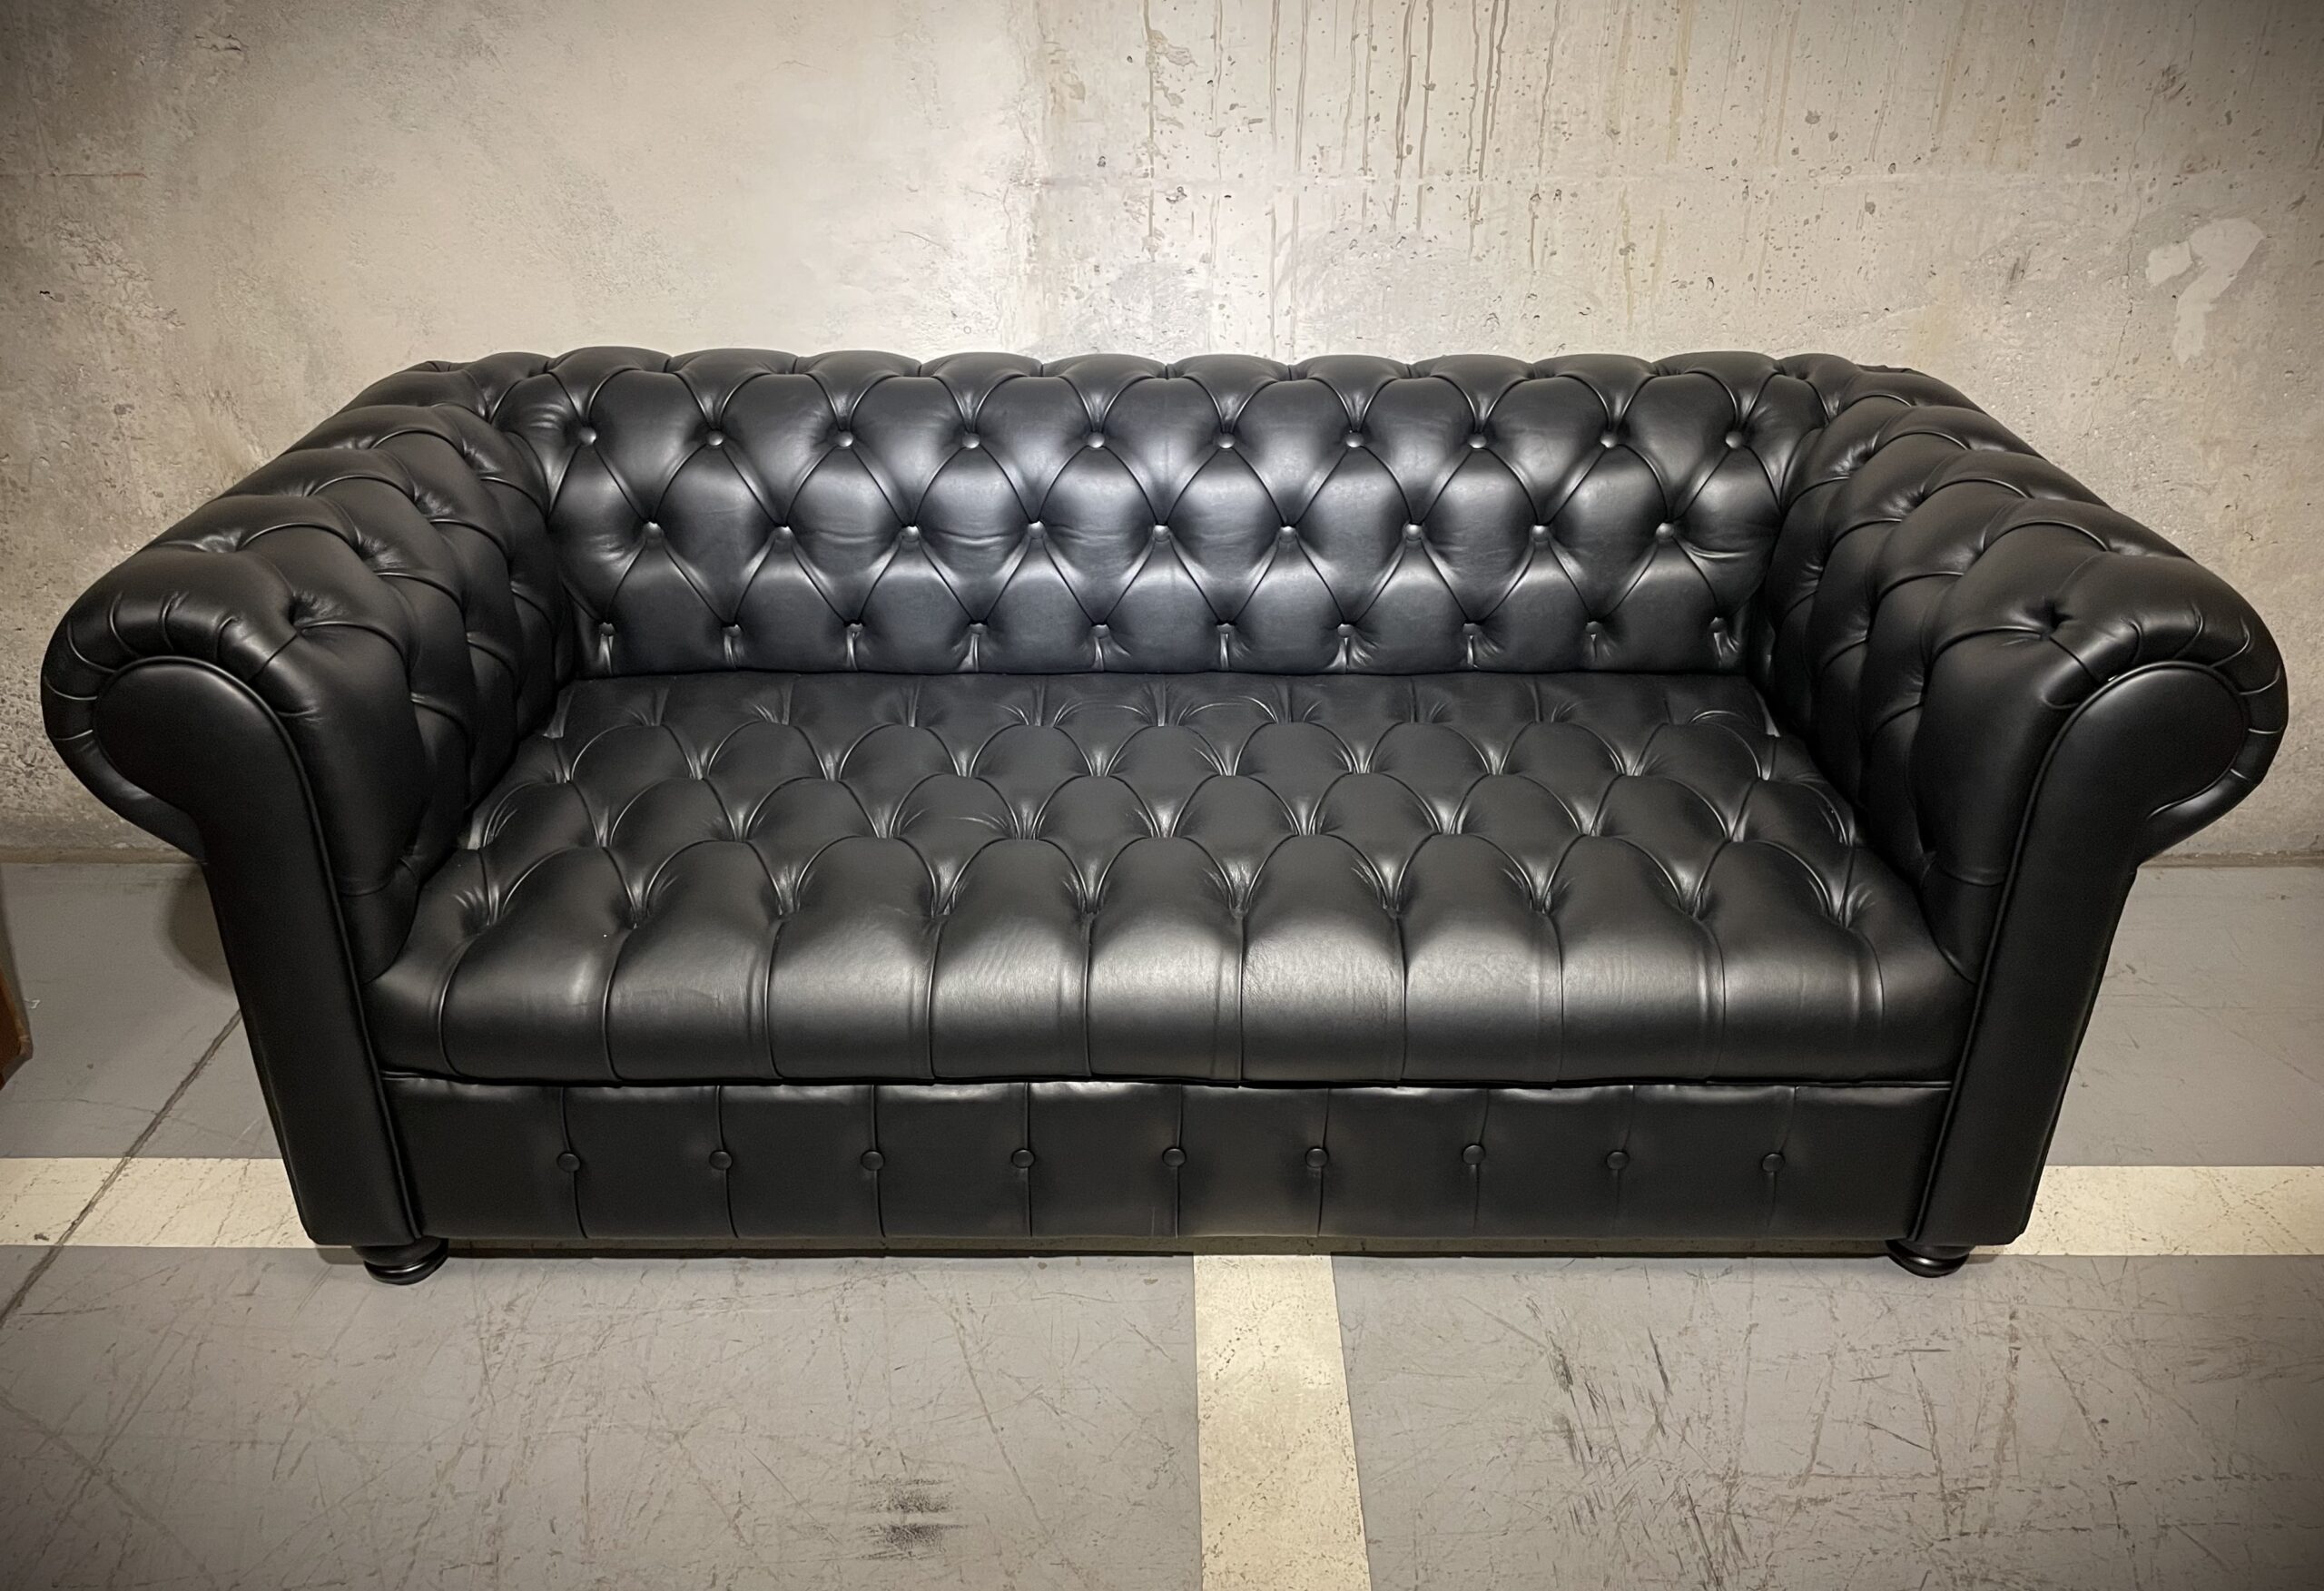 Sofa de Cuero – Chesterfield Color Fargo Negro, Capitoné Ingles, respaldo Recto Clásico, Cuero 100% Natural Uruguayo 2